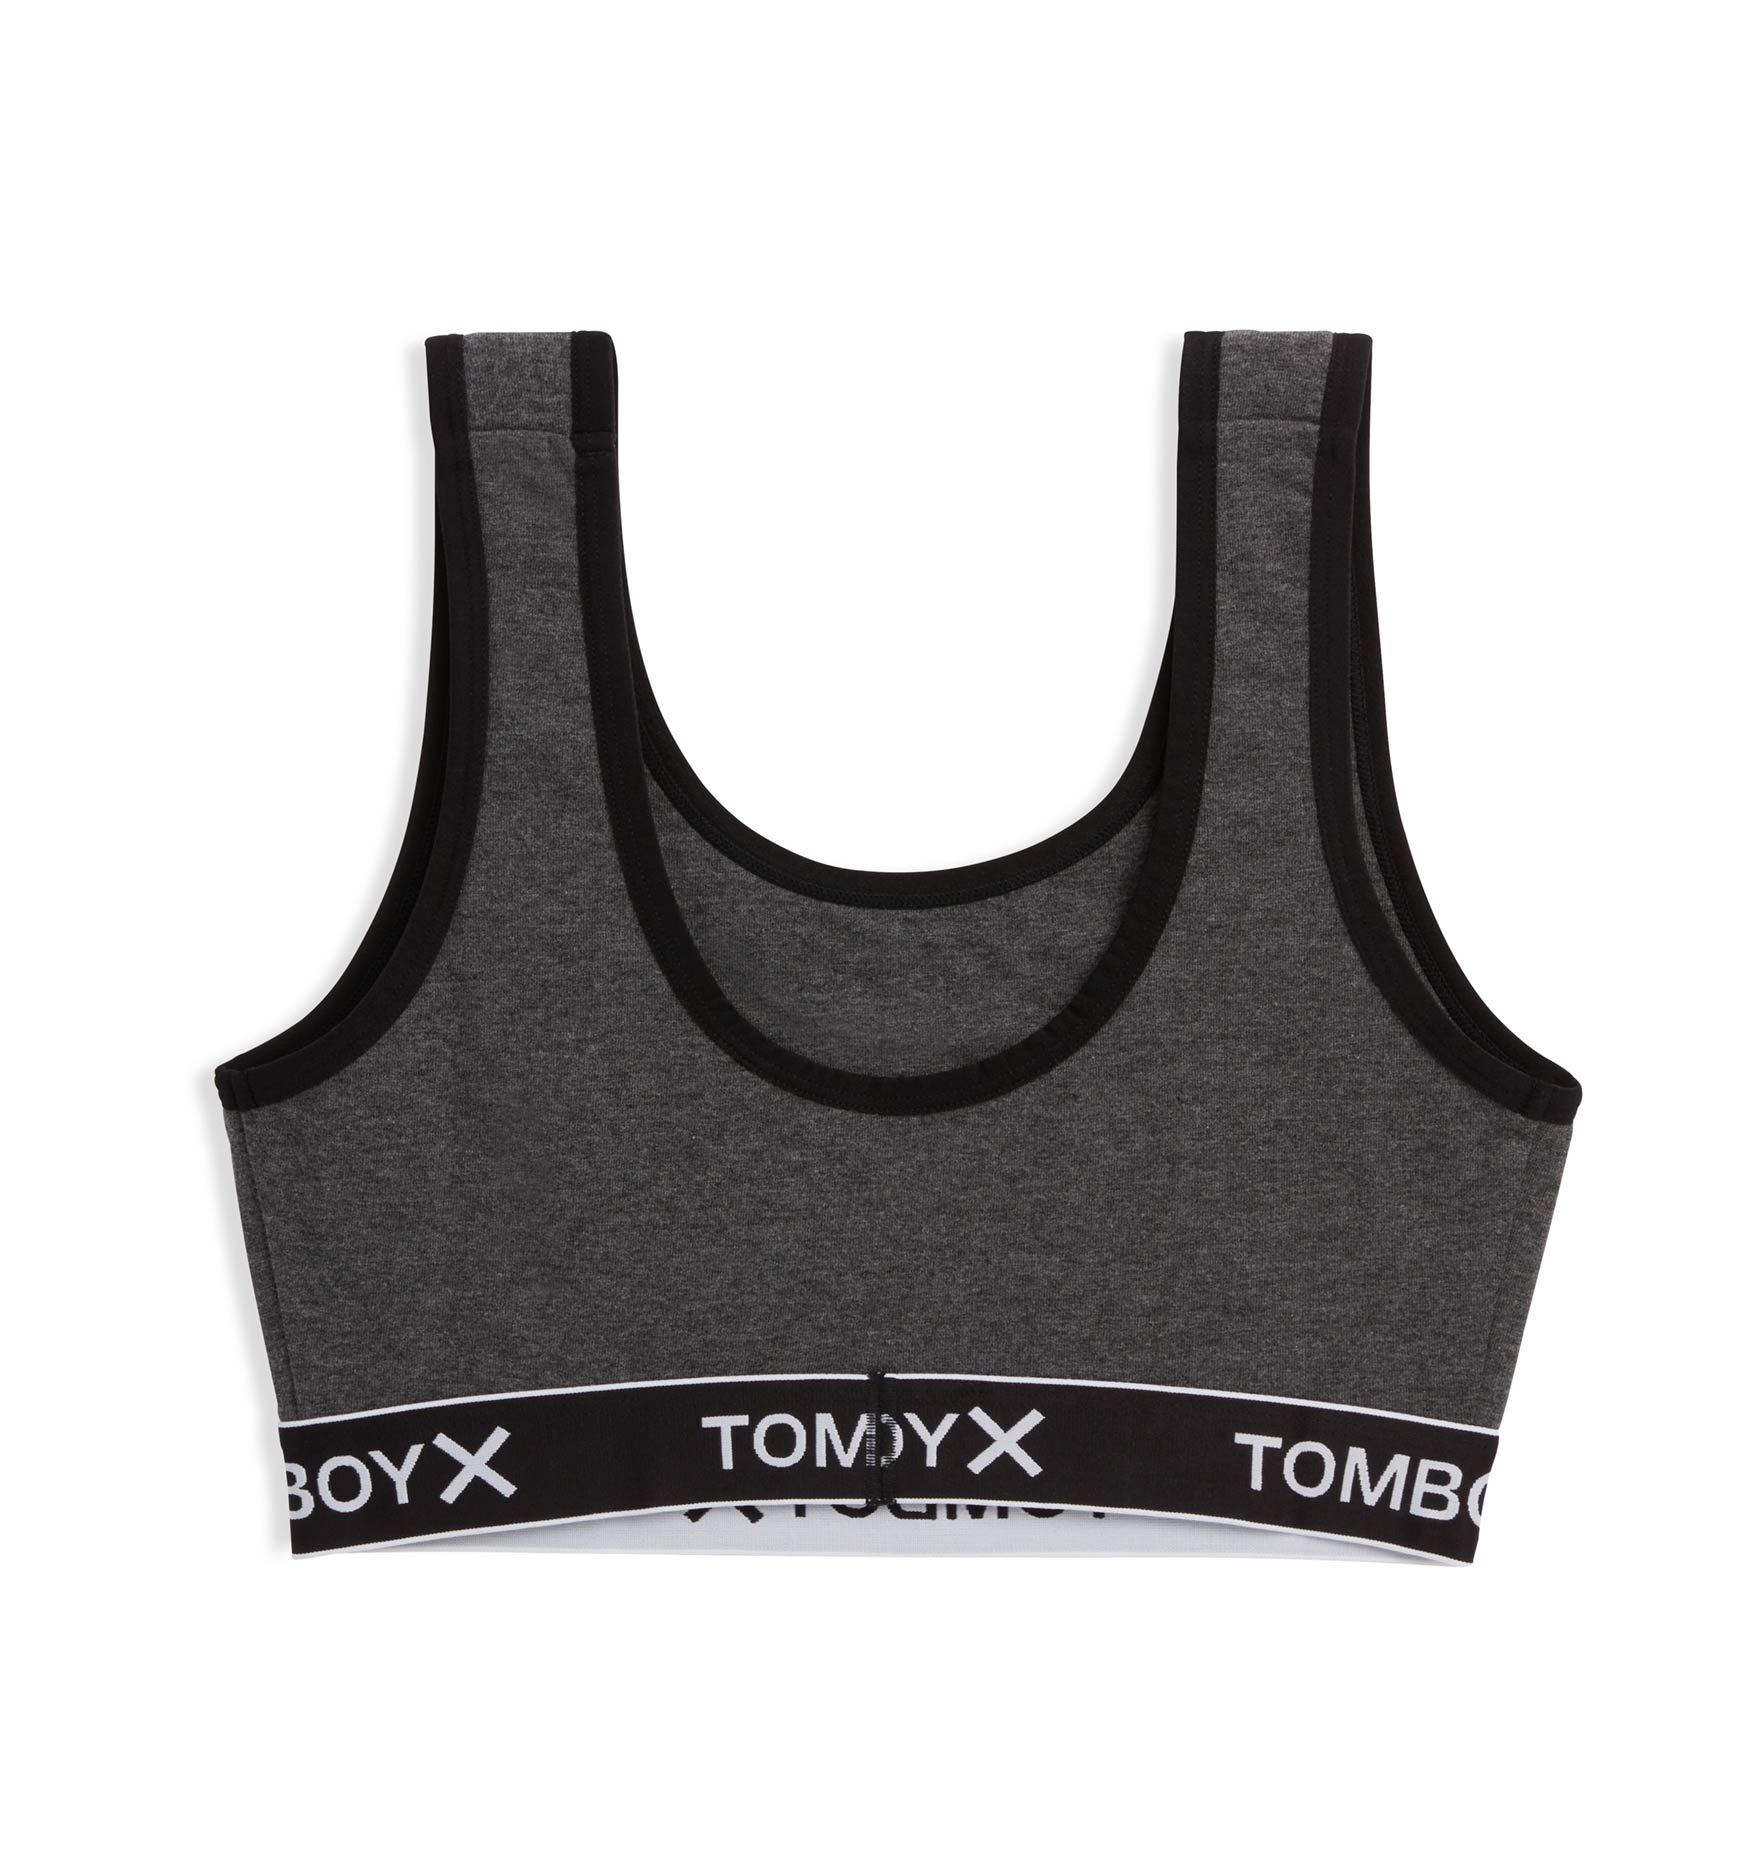 Tomboy X Rainbow Pride Bra unlined essentials sports bra Like New size Small